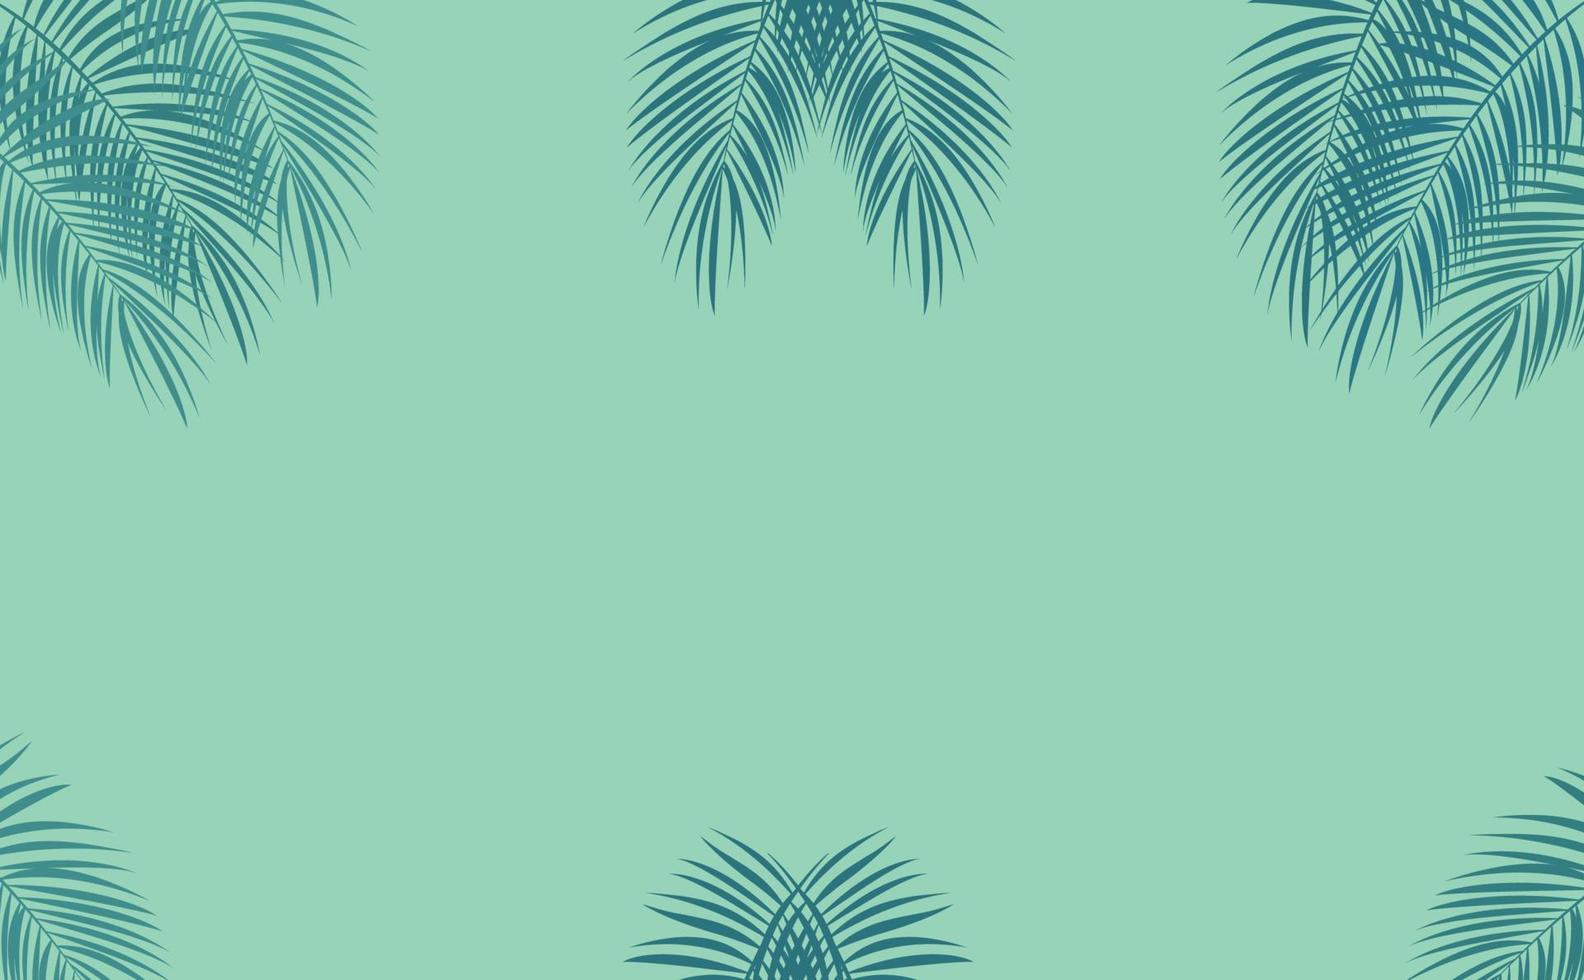 kleurrijk naturalistisch frame van het blad van de libistons van Chinees. zuidelijke palm vector